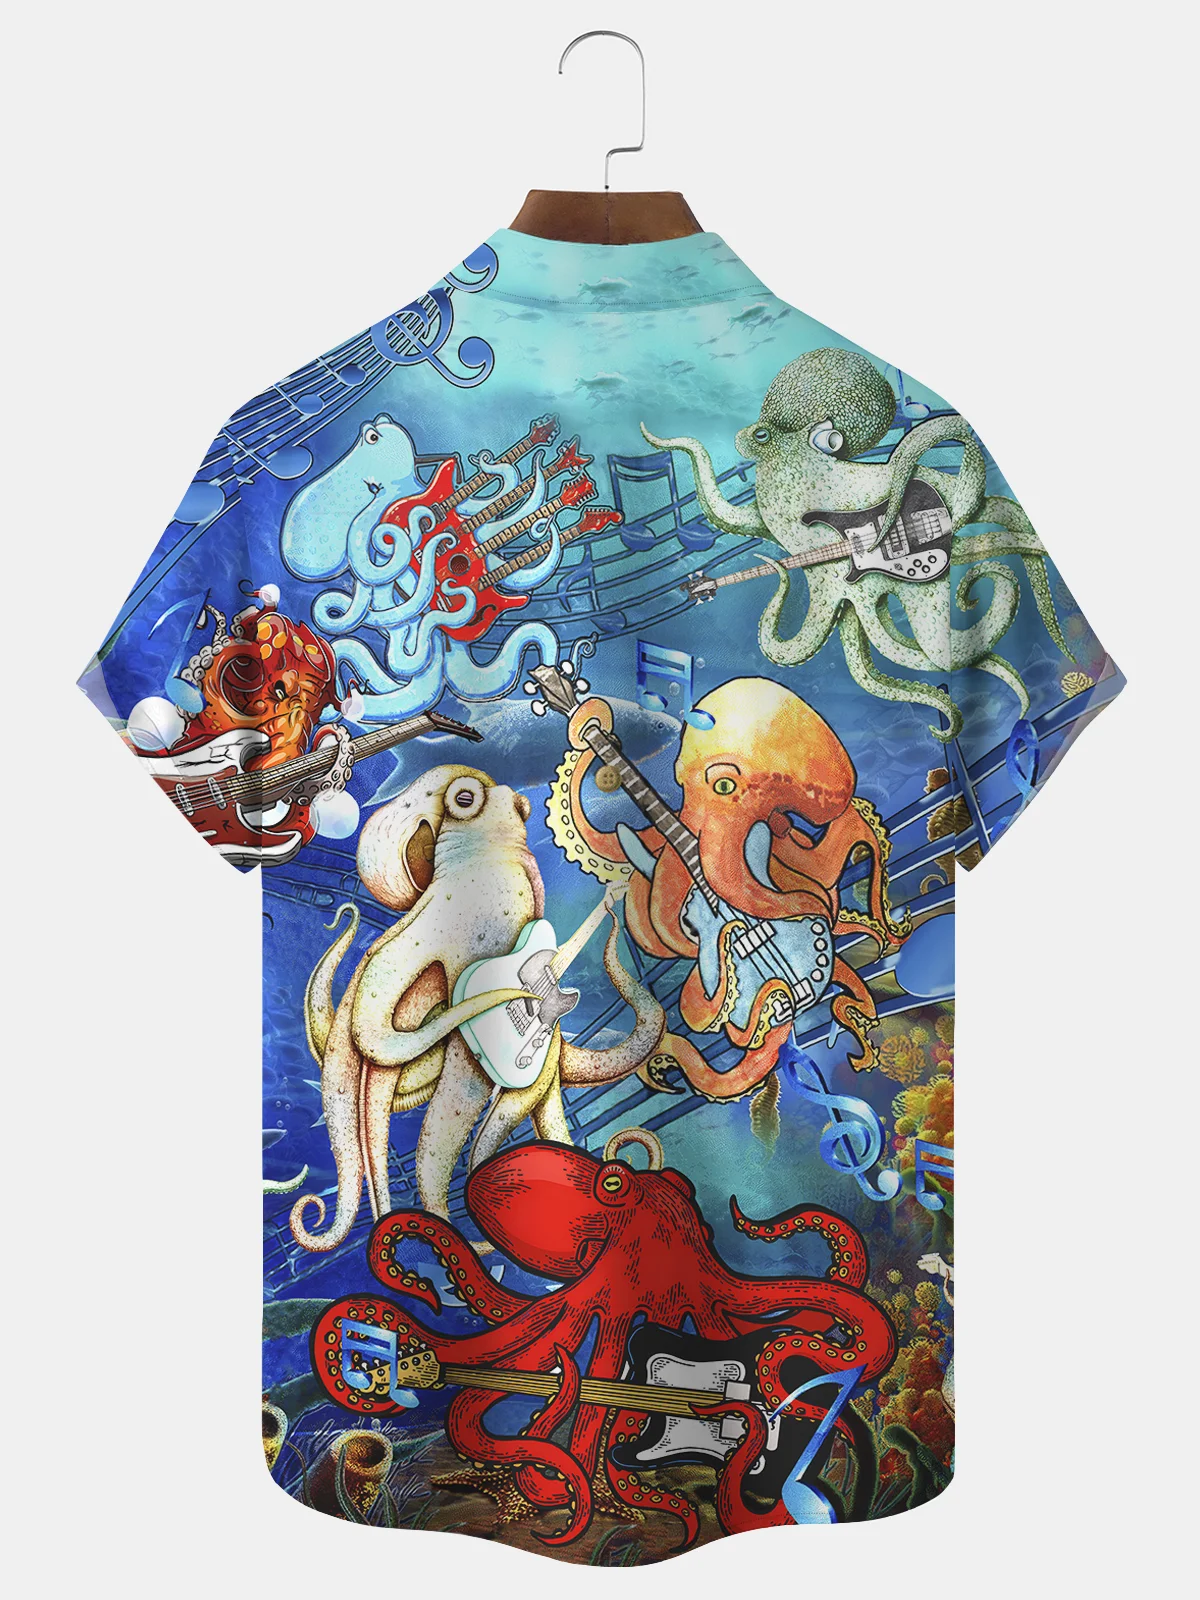 Royaura Octopus Musical Guitar Print Beach Men's Hawaiian Oversized Short Sleeve Shirt with Pockets